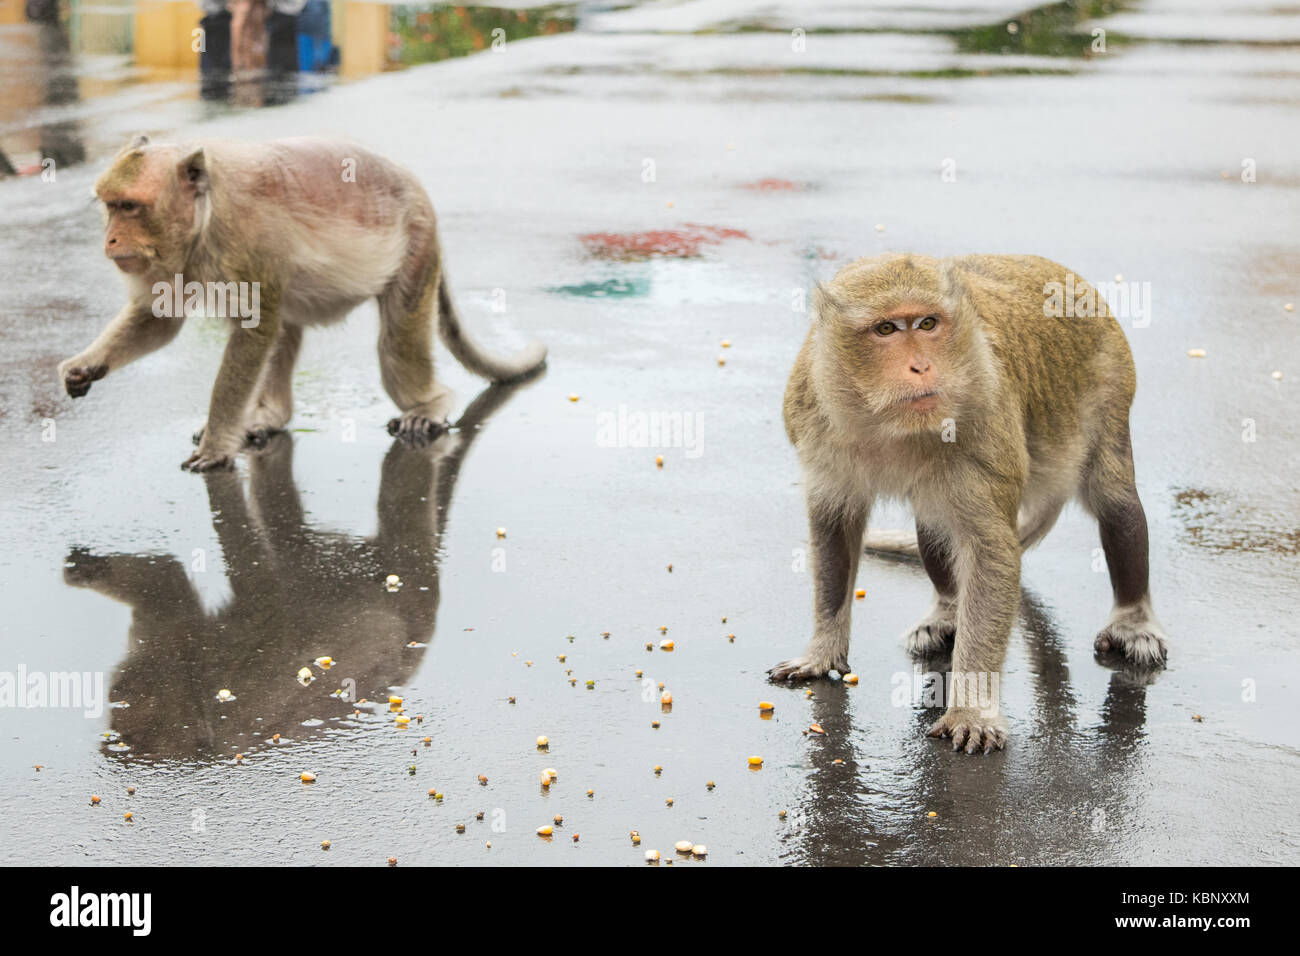 Deux des macaques, debout sur le tarmac dans un environnement urbain, la consommation de graines de maïs. Un singe a une grave perte de la fourrure. Phnom Penh, Cambodge, Asie Banque D'Images